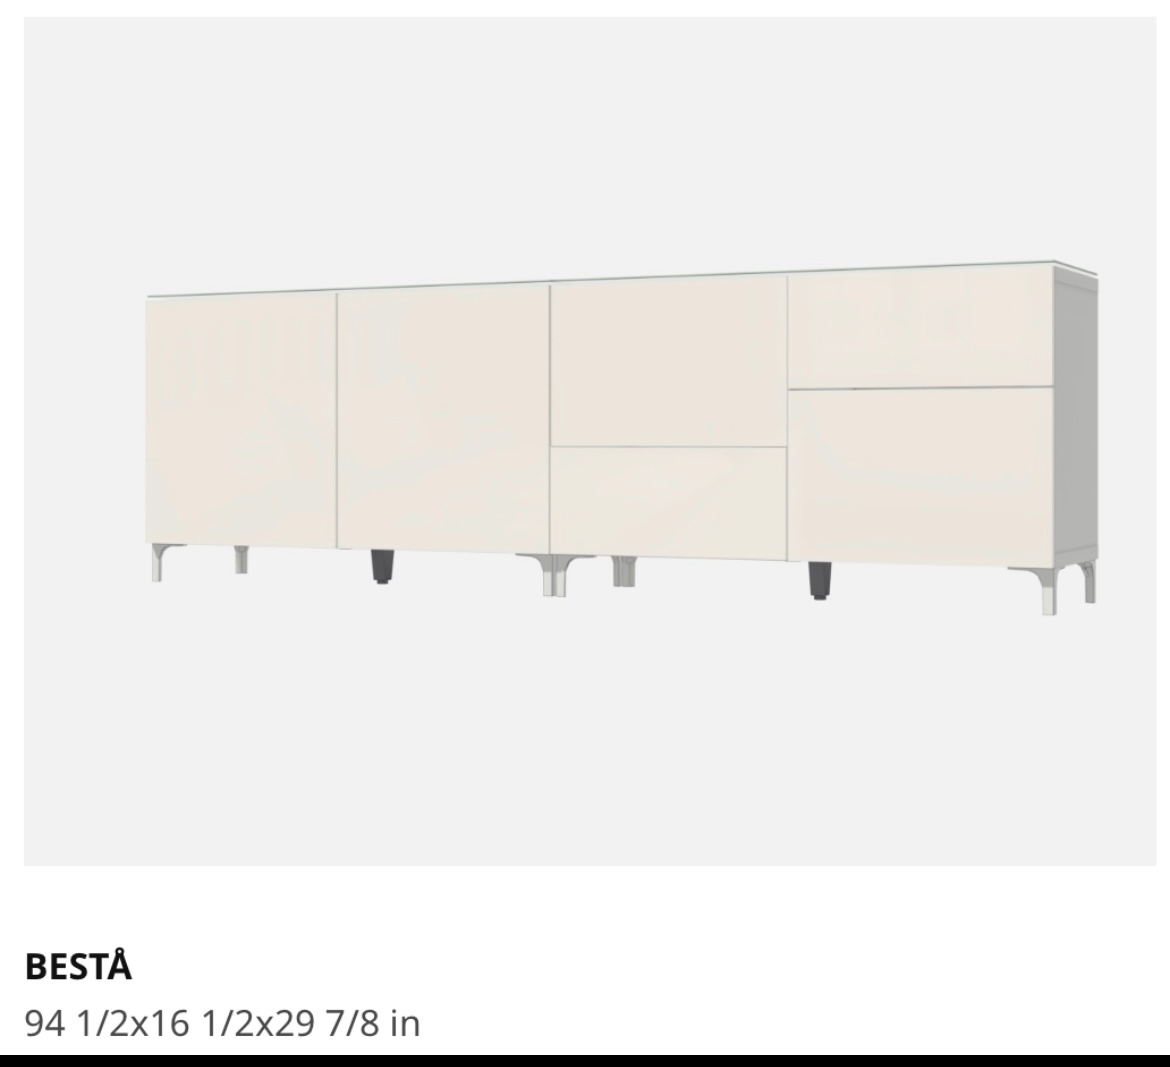 muebles y colchones - Credenza BESTA IKea estantería. 0